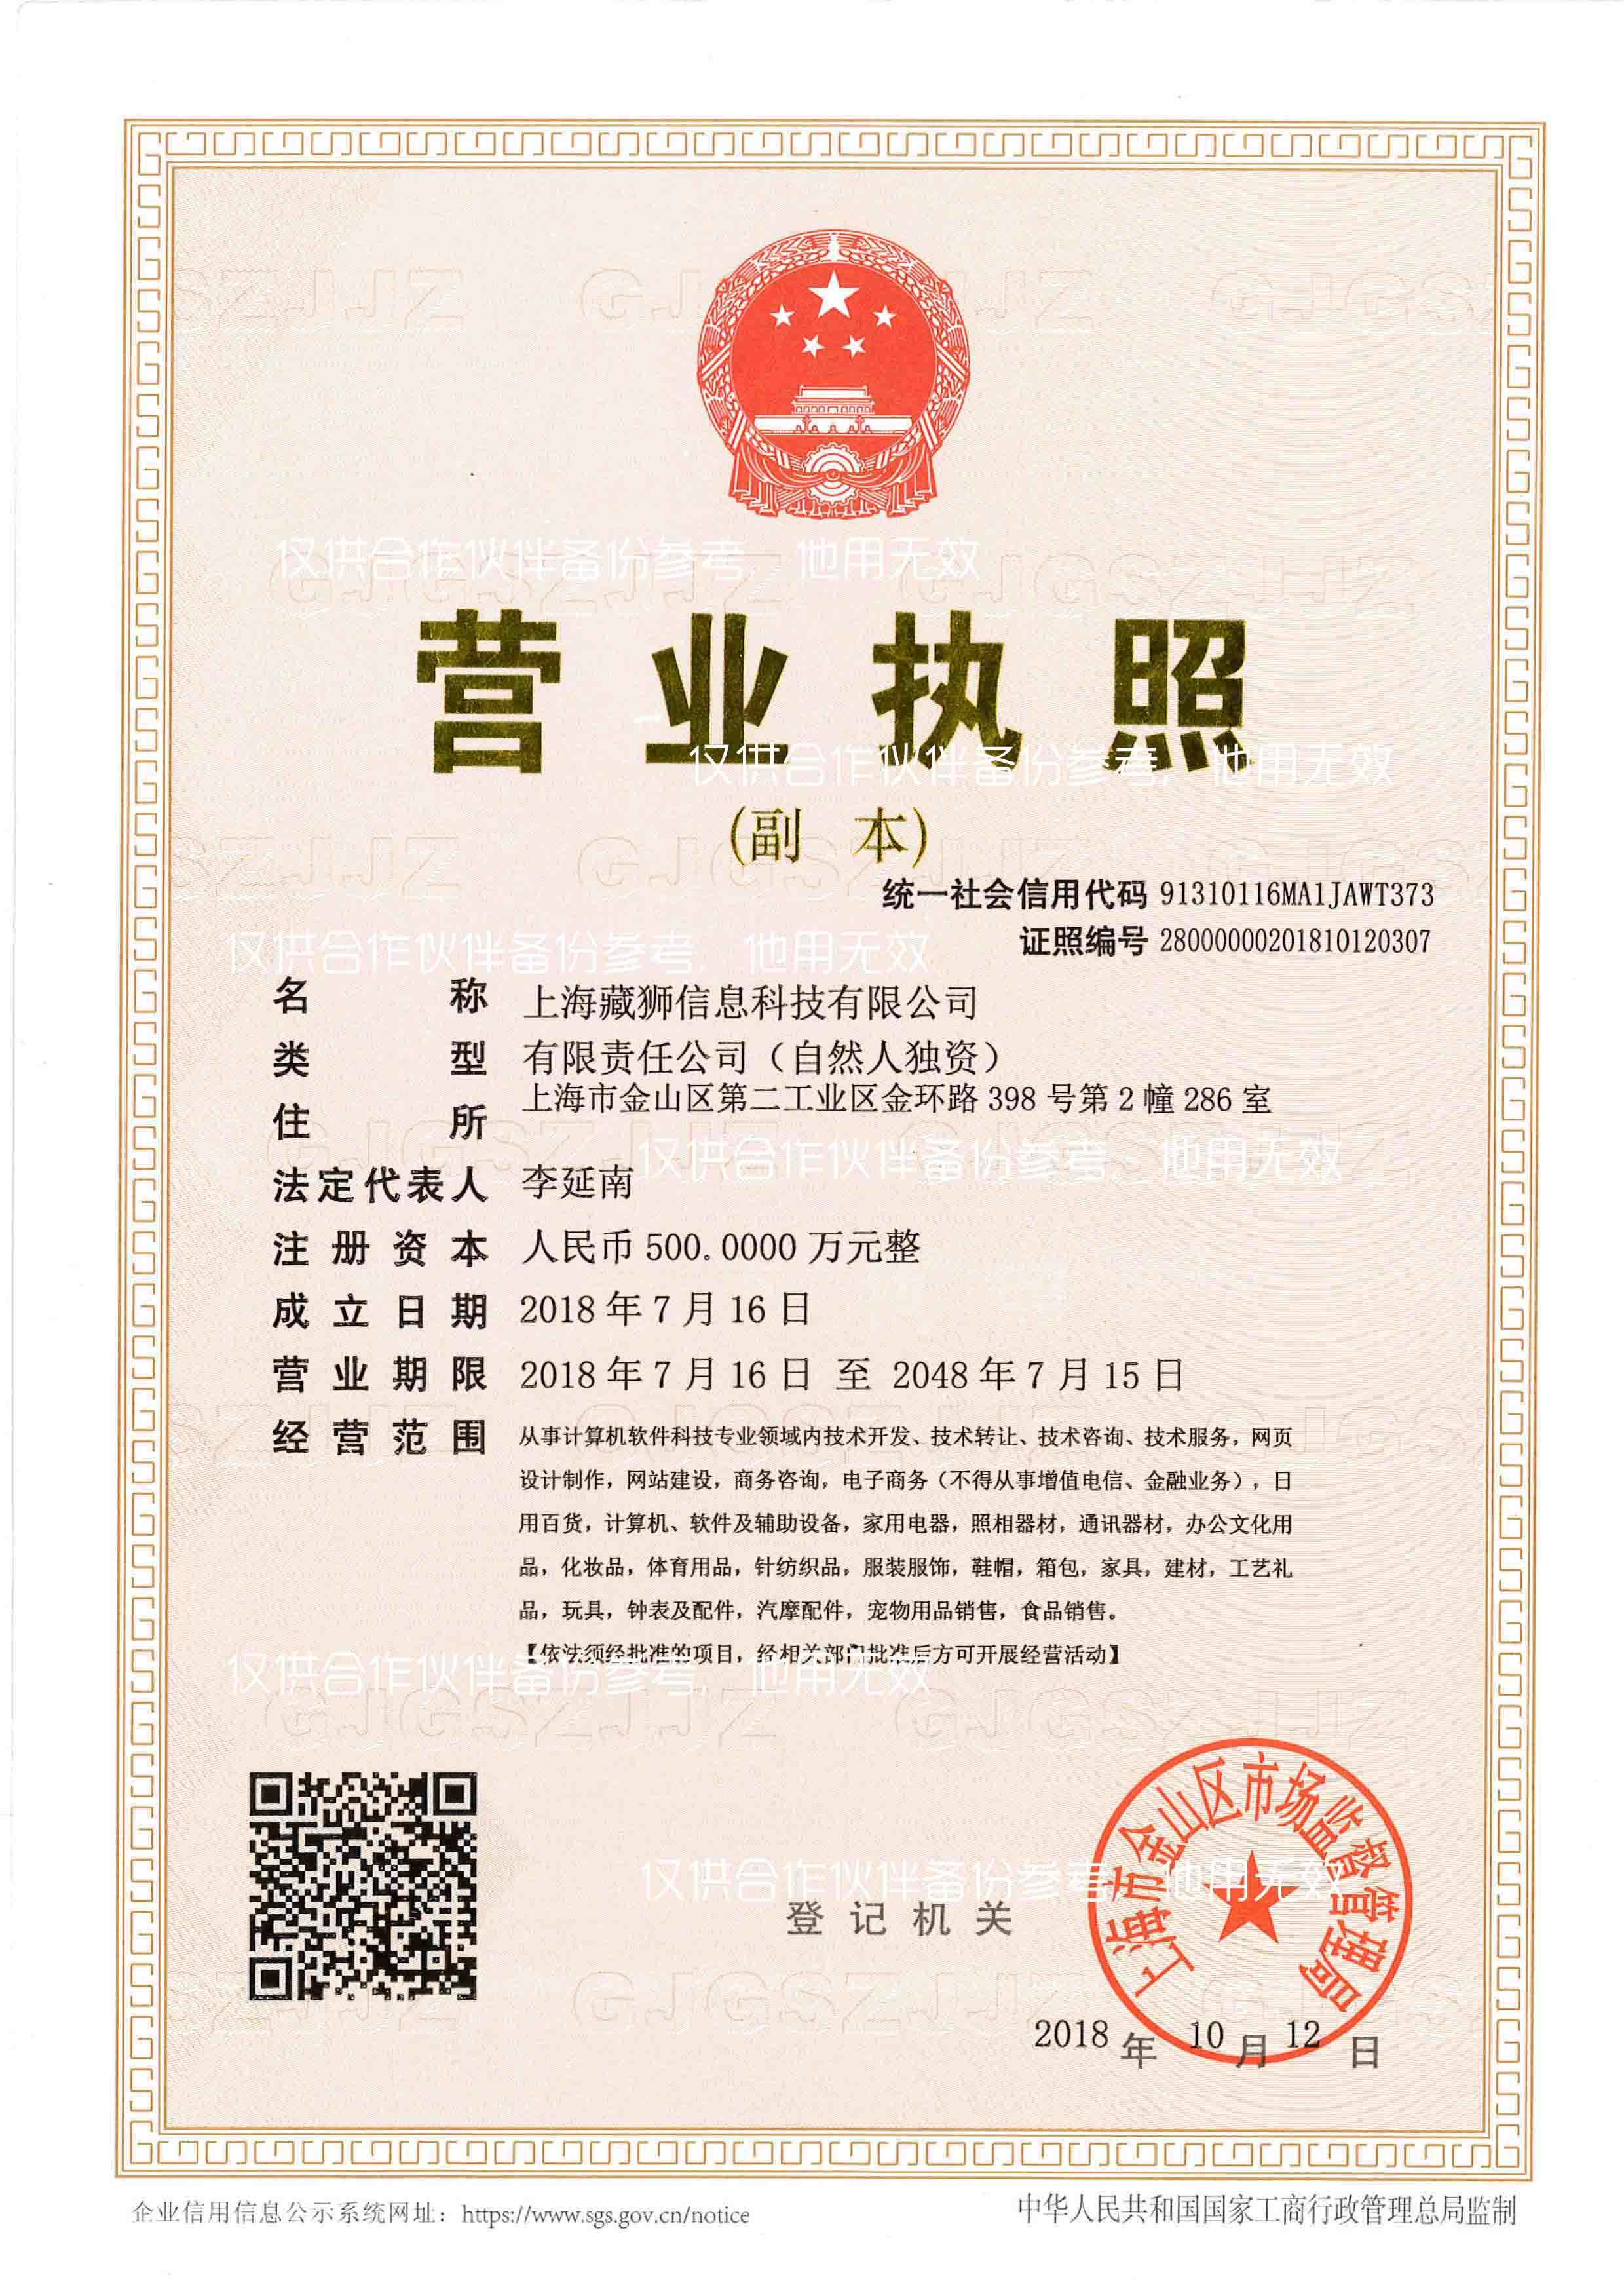 上海藏狮信息科技有限公司